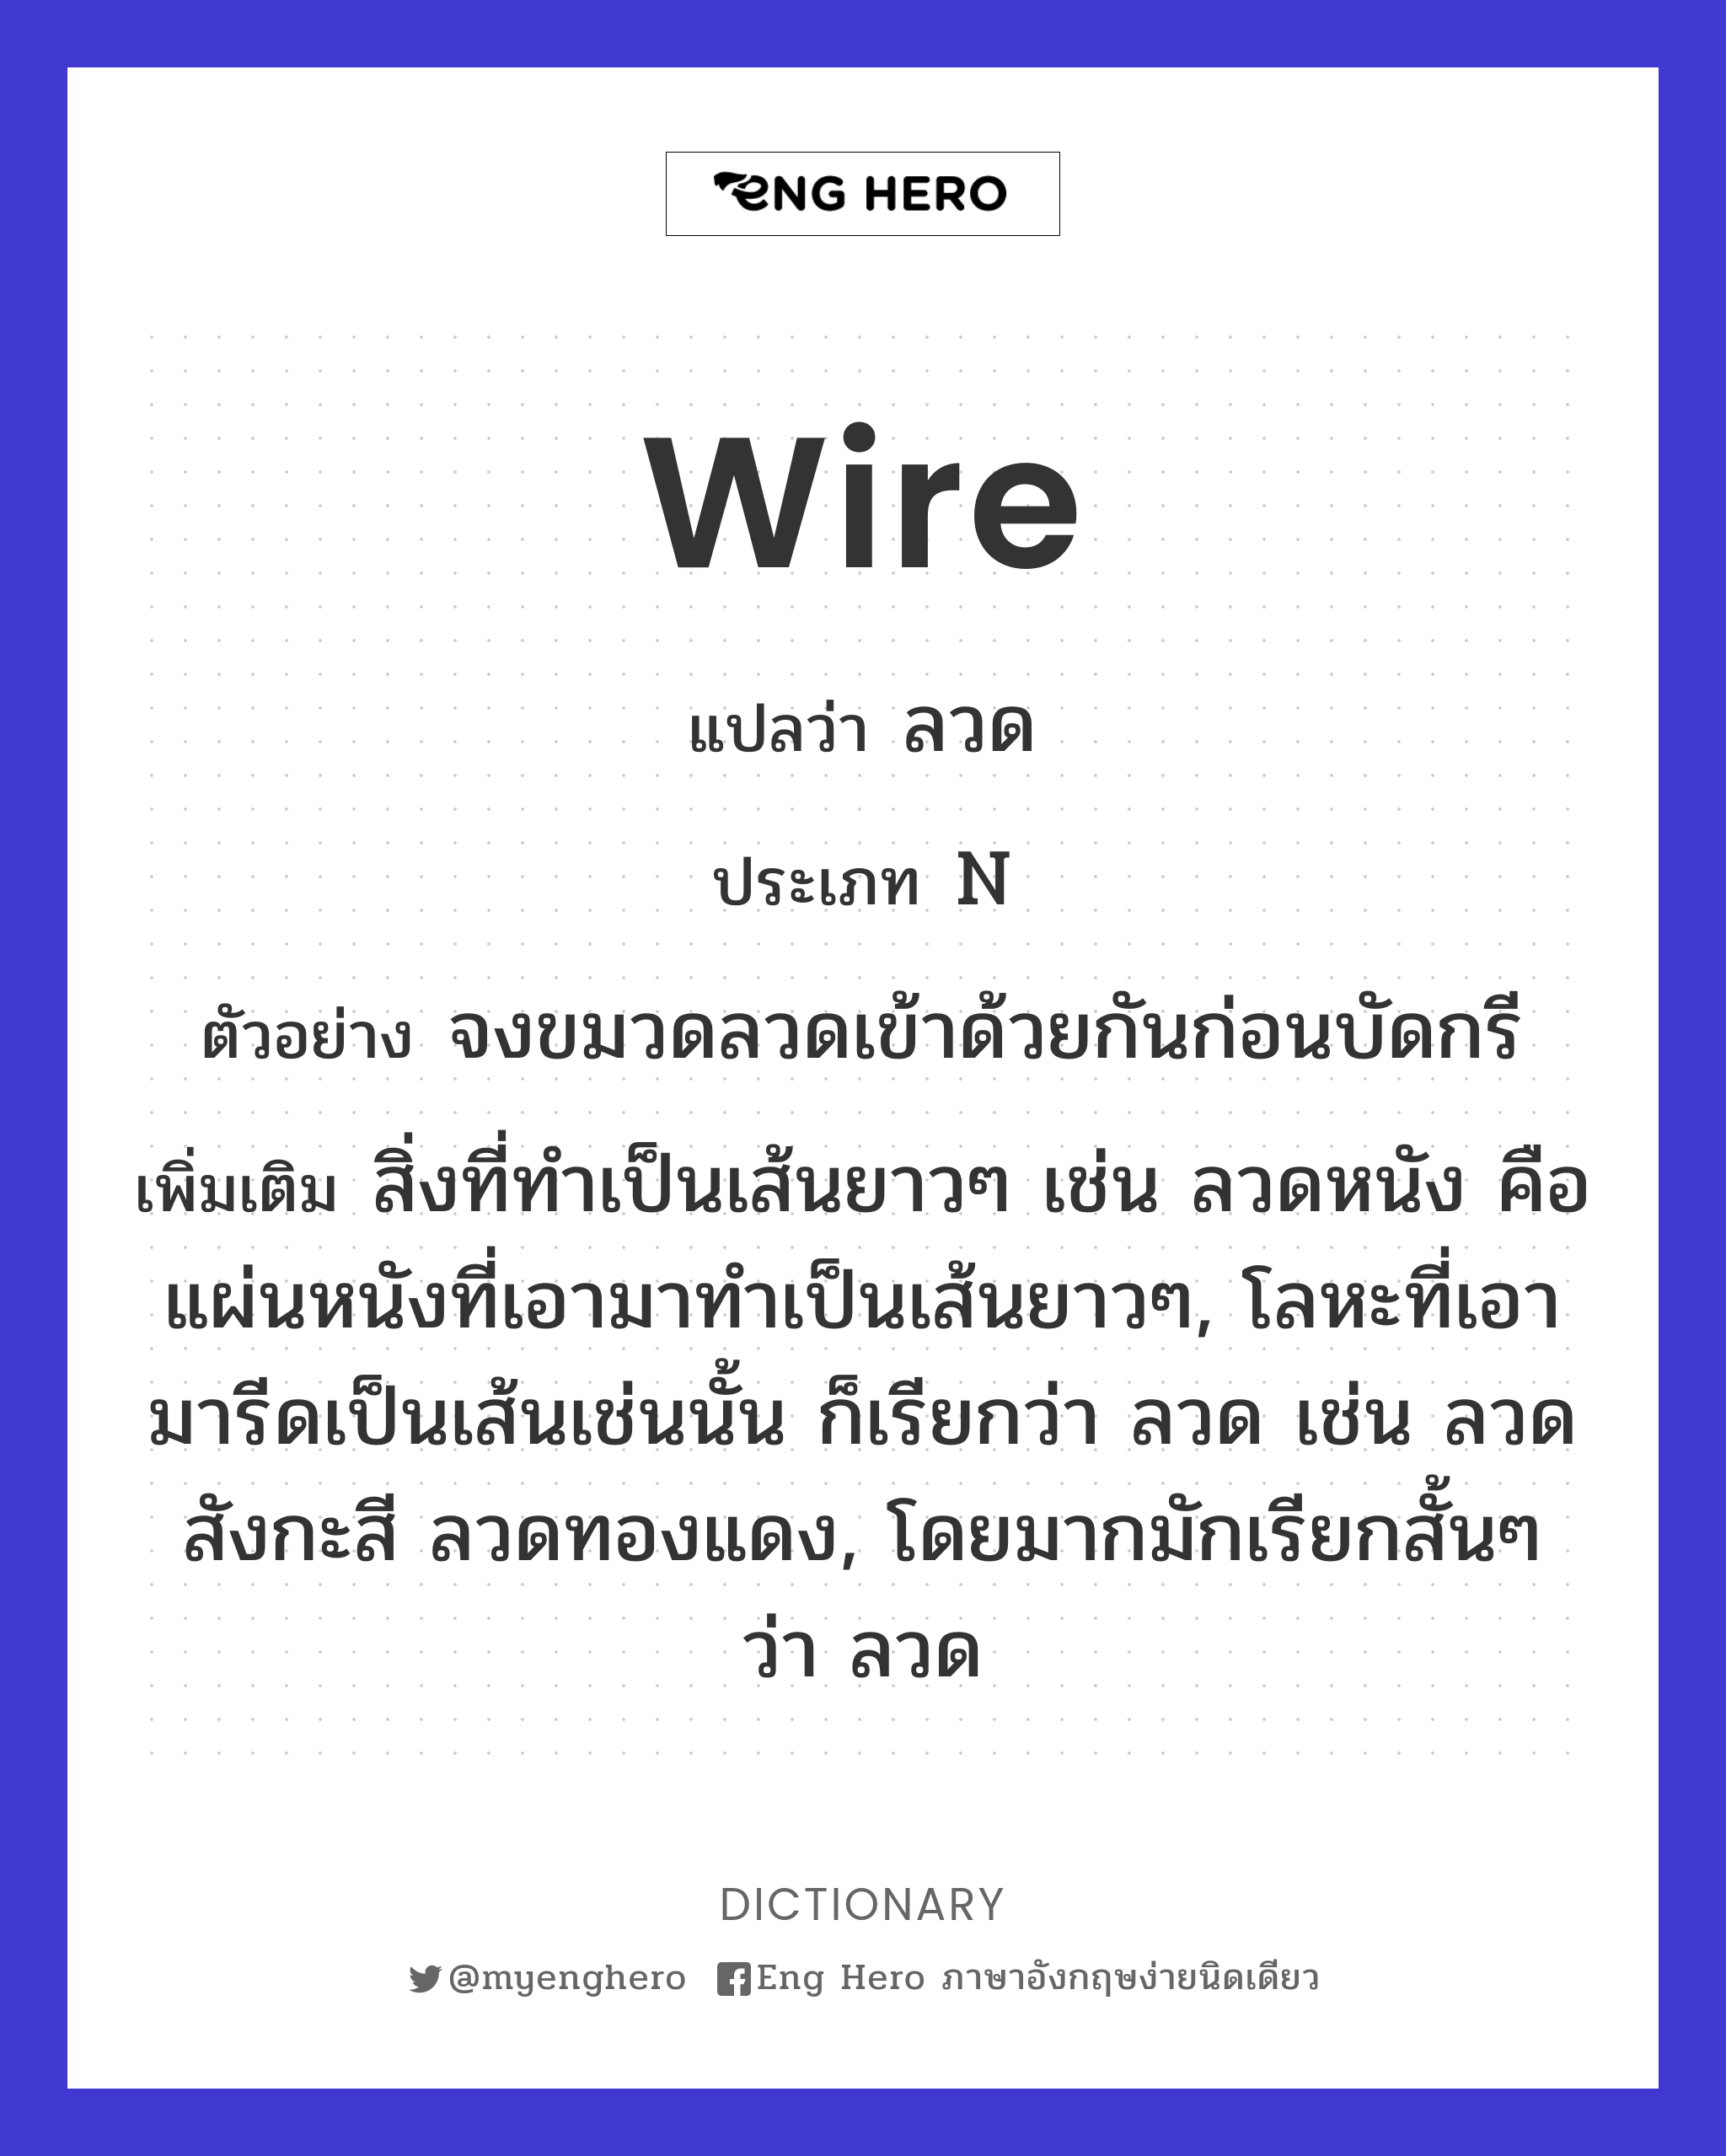 wire